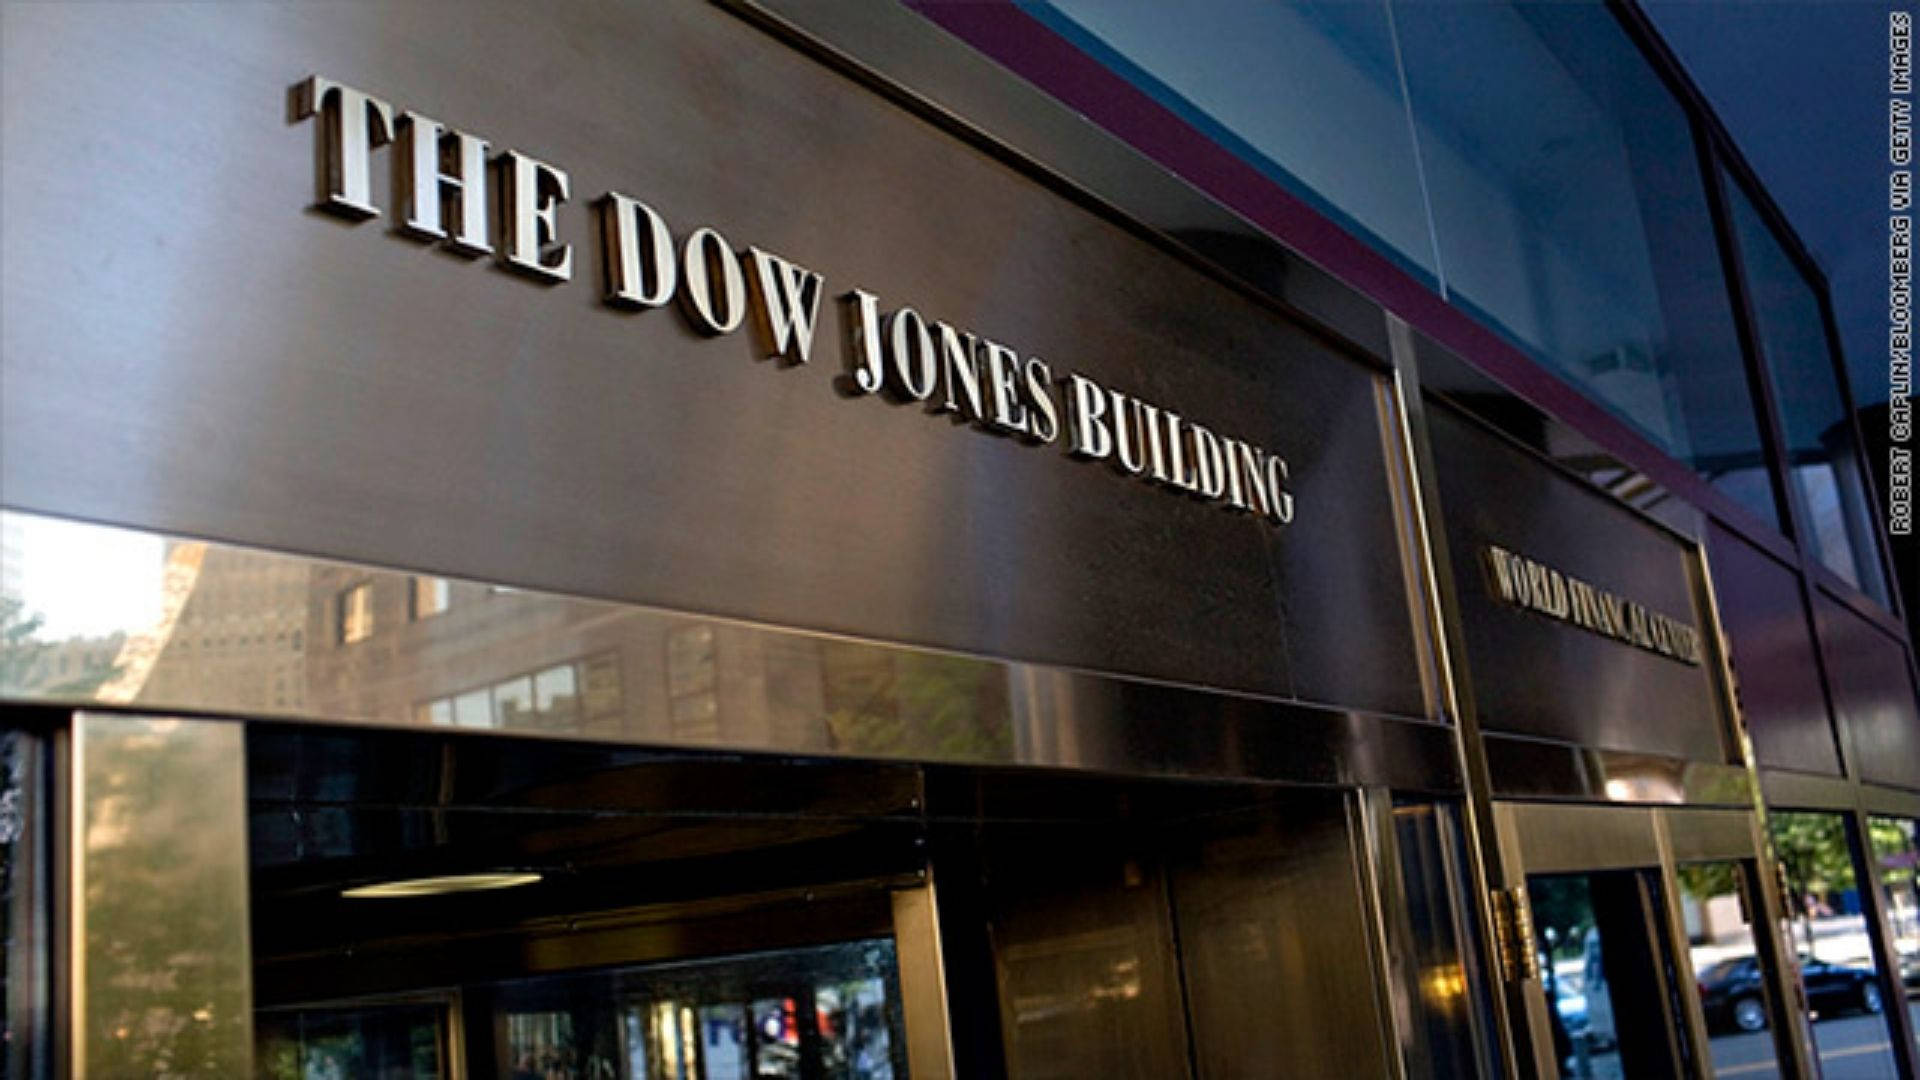 The Dow Jones Building